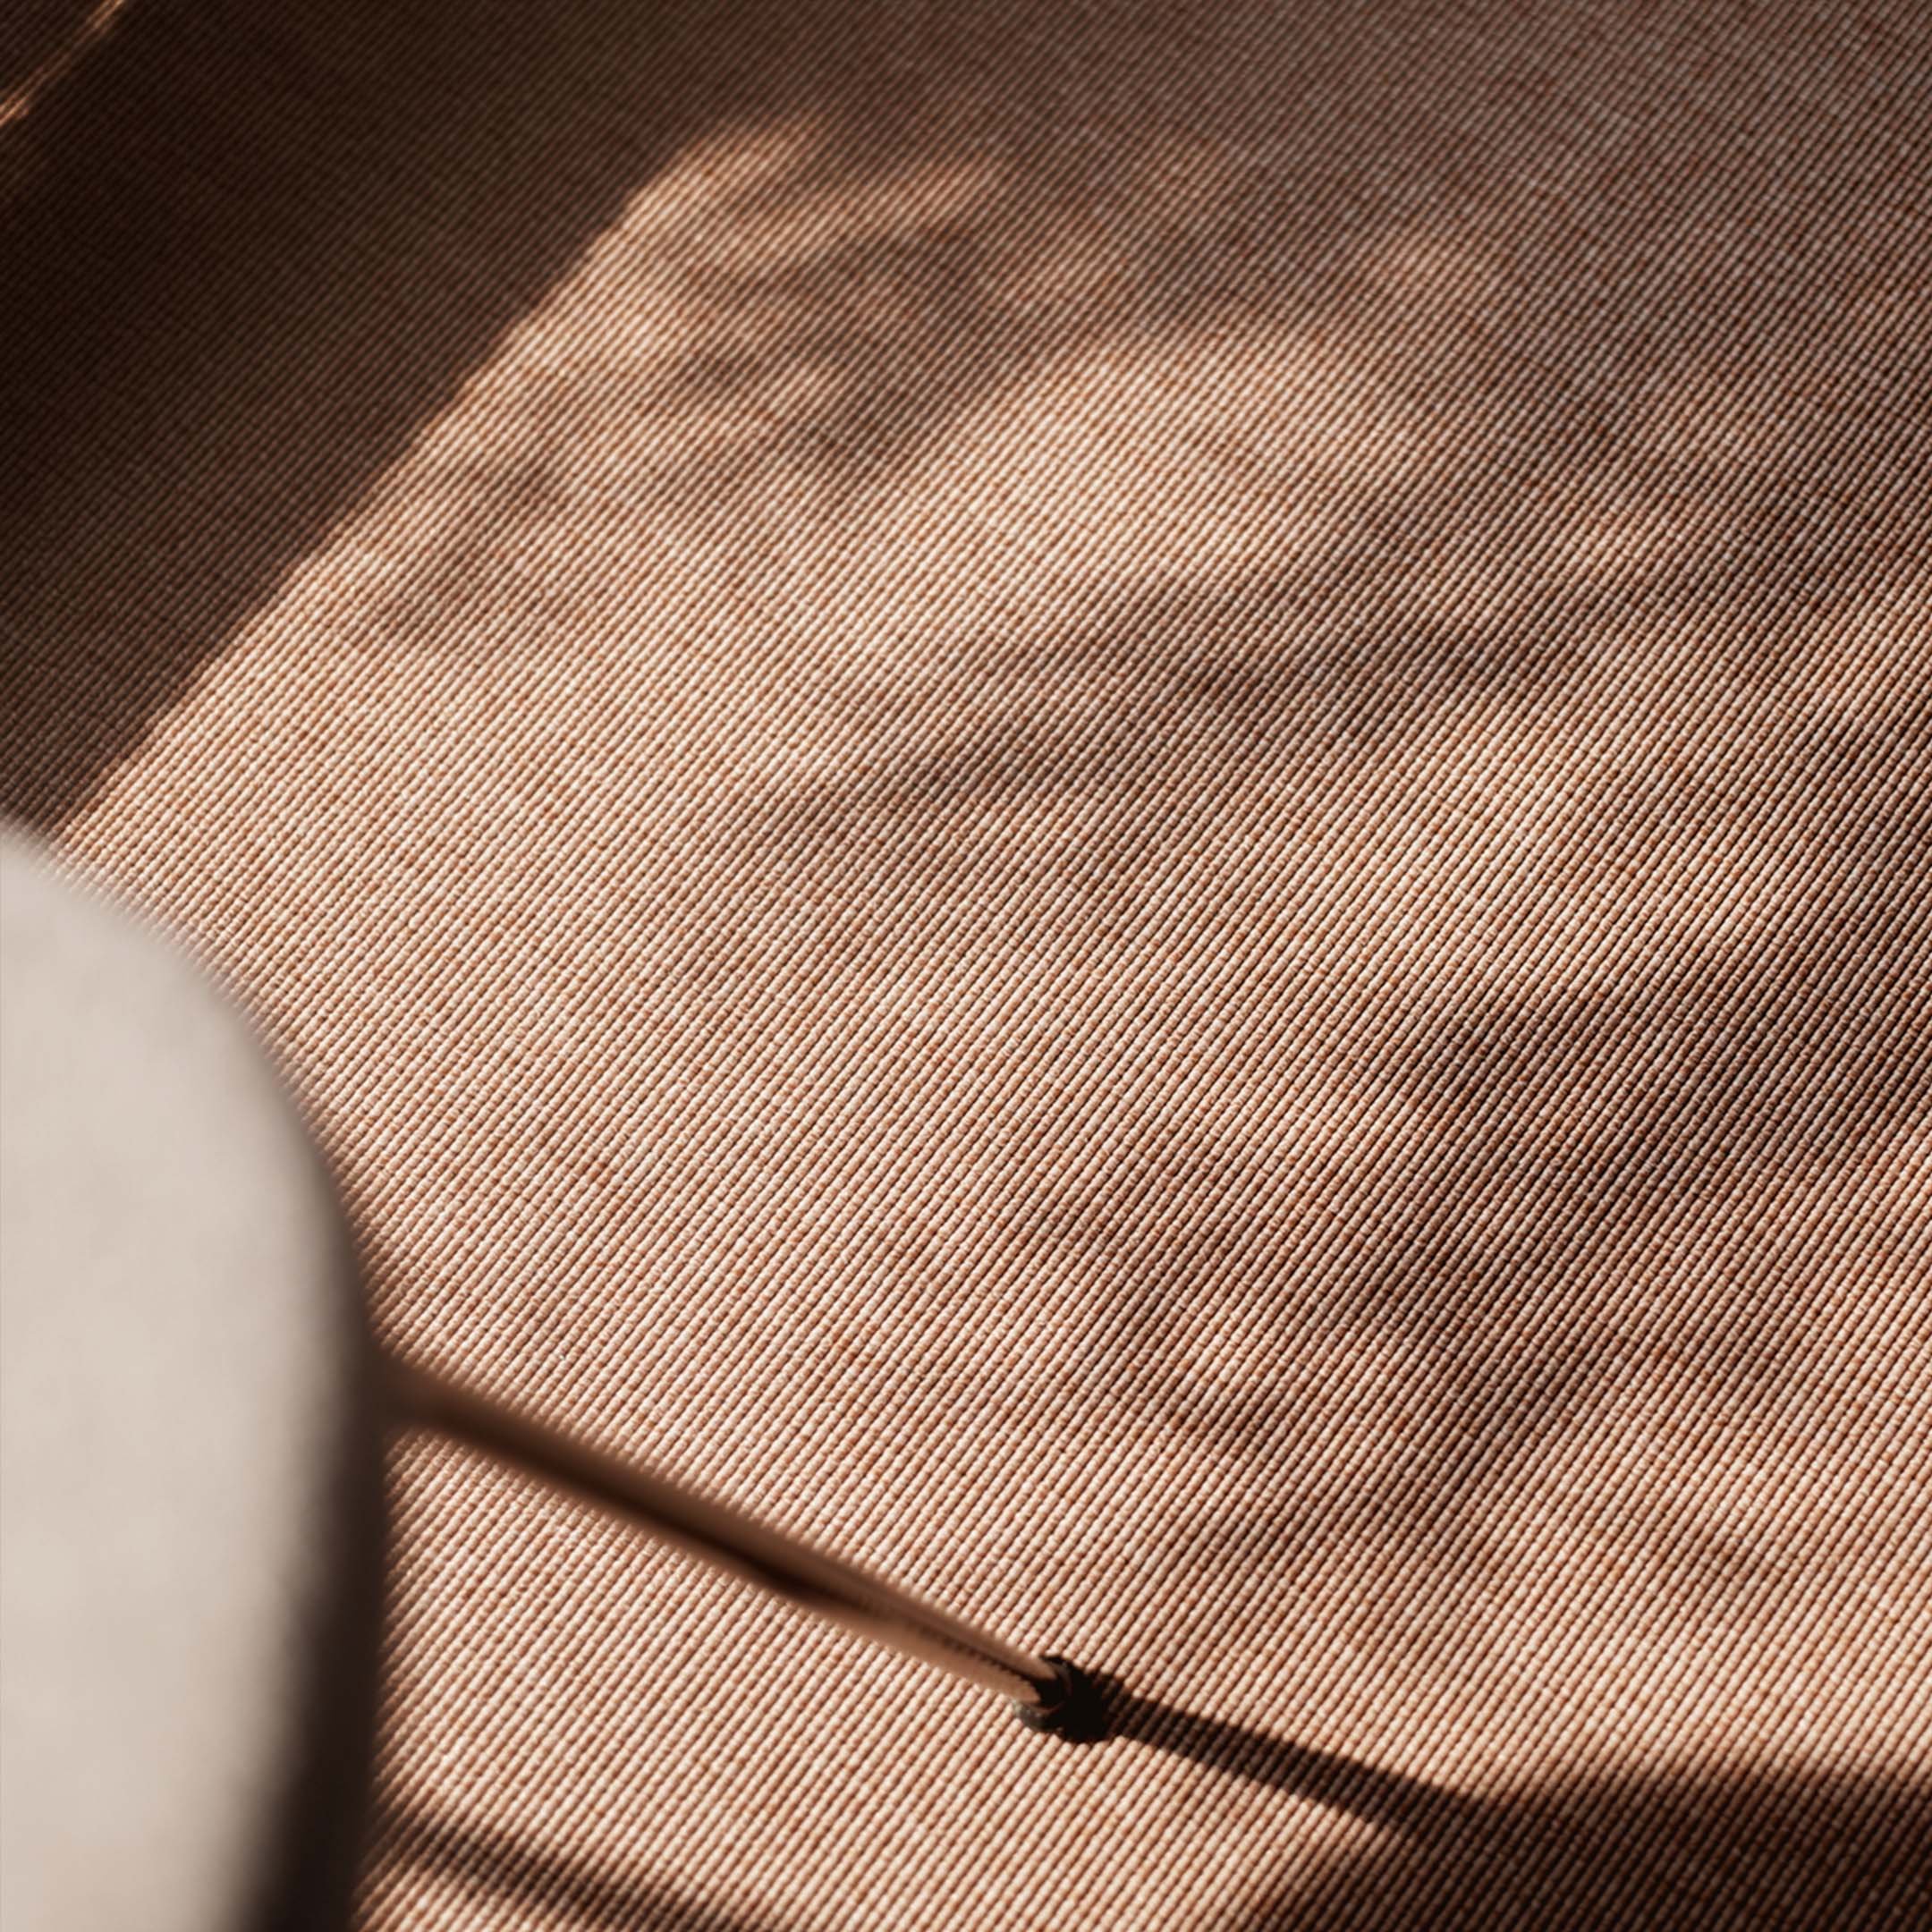 Lähikuva persikanvärisestä teksiililattiasta auringonpaisteessa.